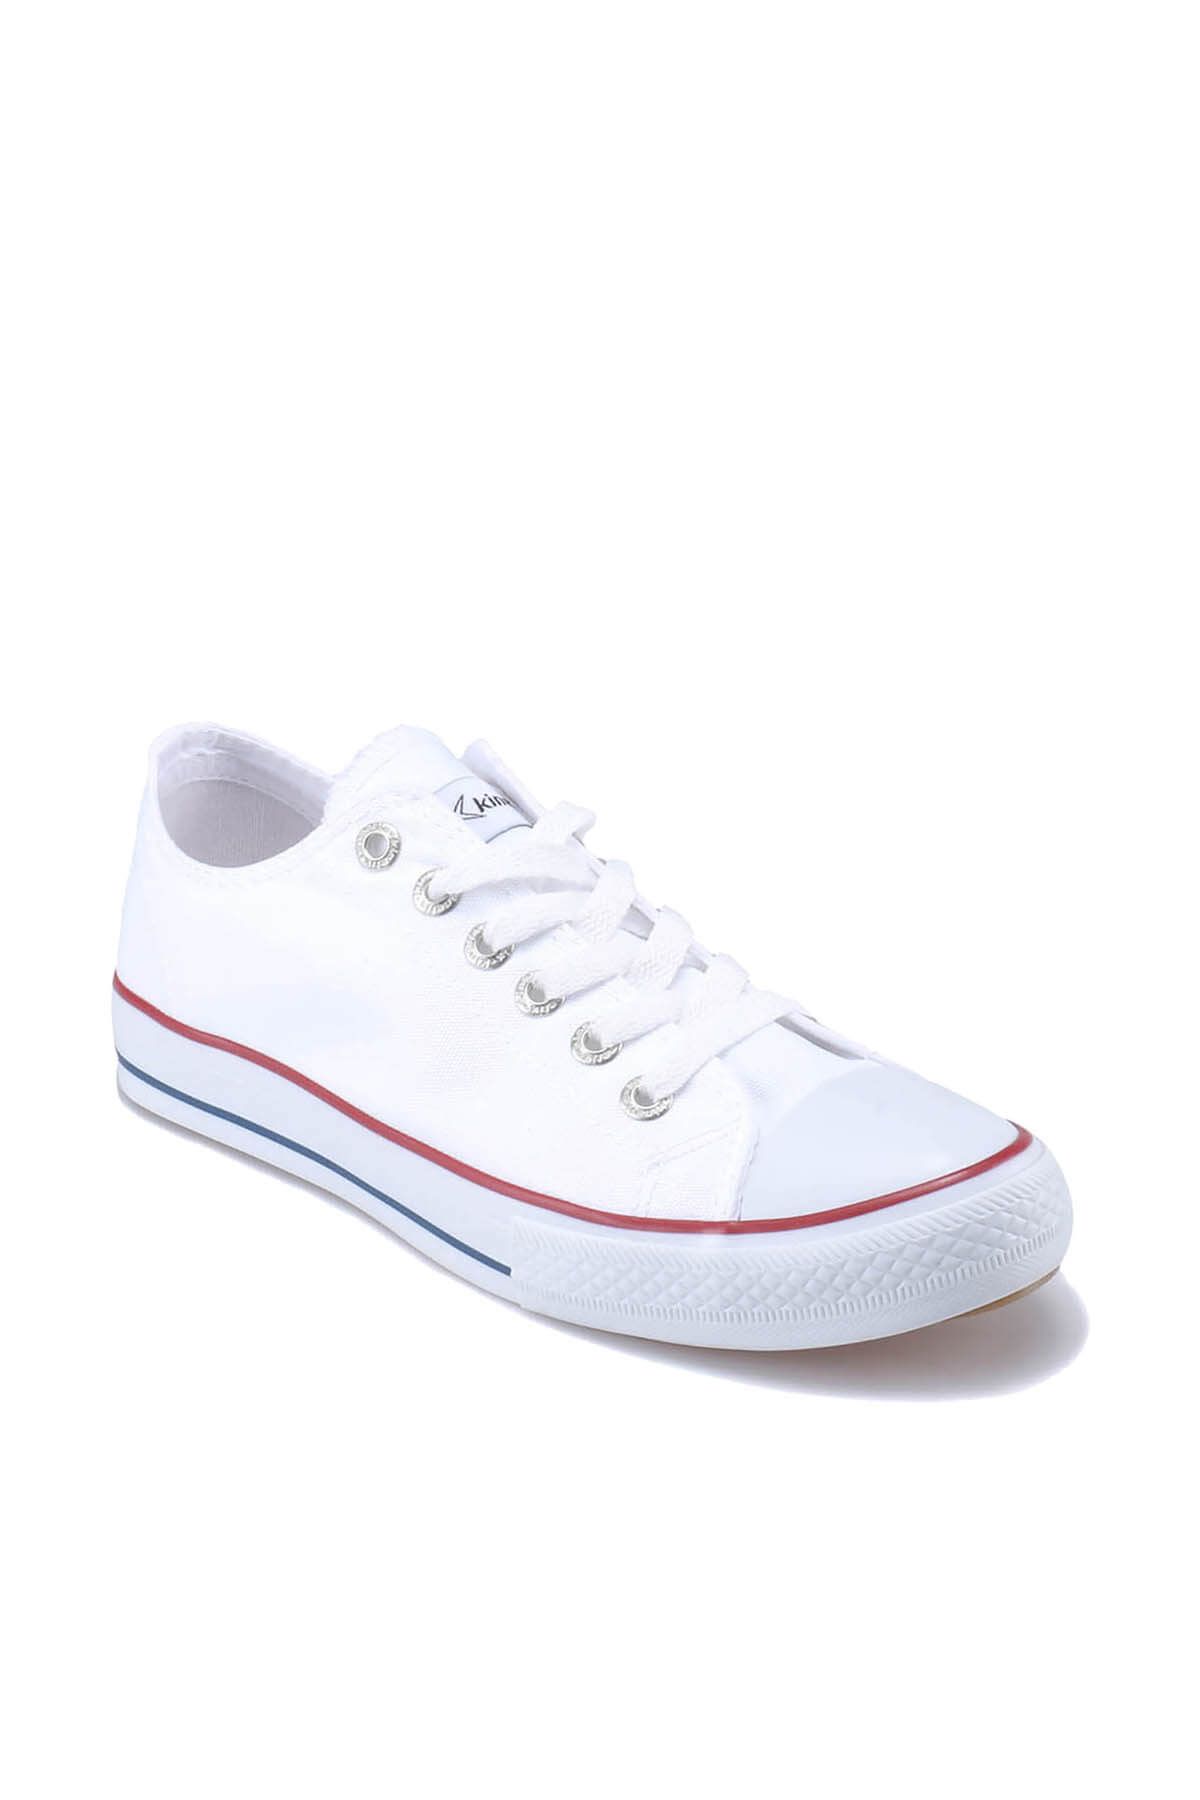 Kinetix INTENSE Beyaz Erkek Sneaker Ayakkabı 100242416